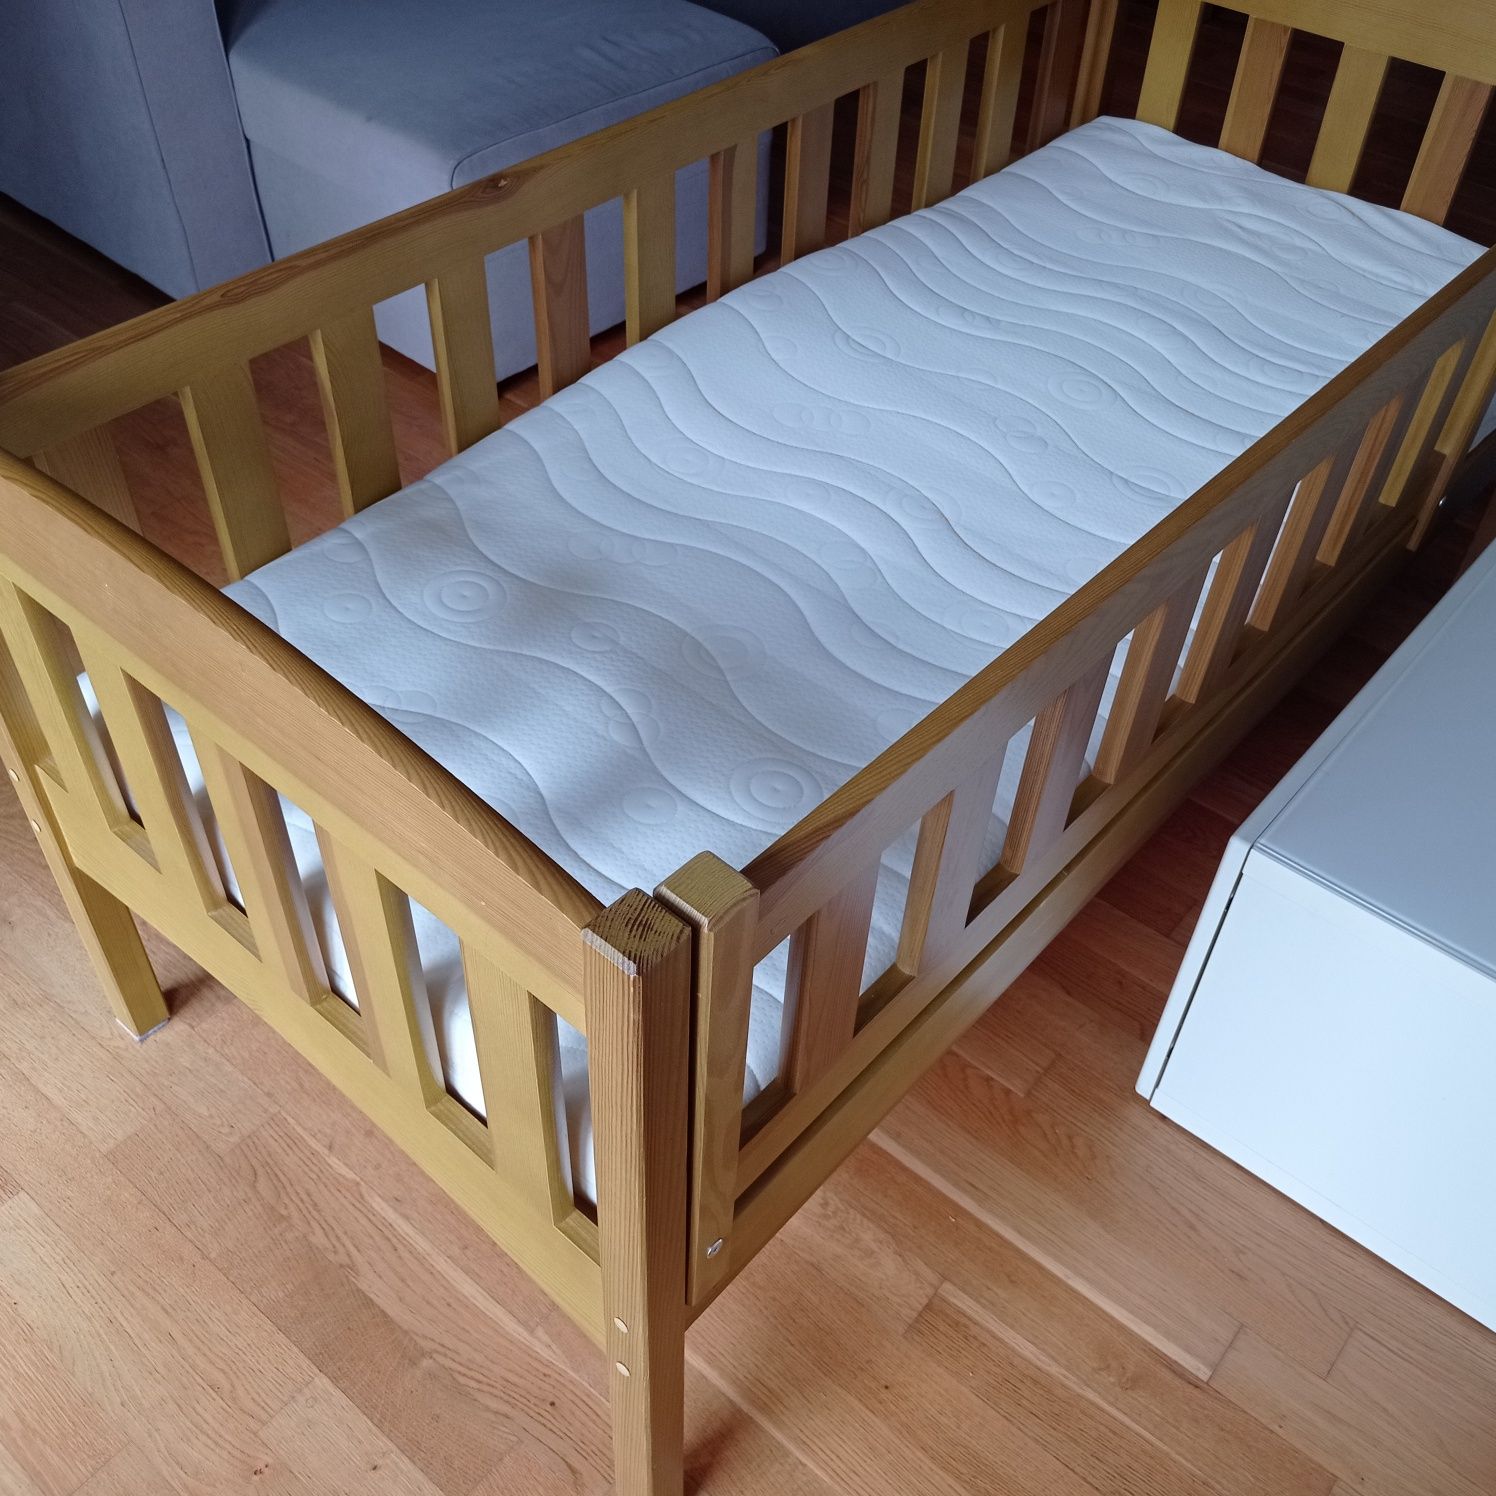 Łóżko drewniane 160 x 70 Lano meble